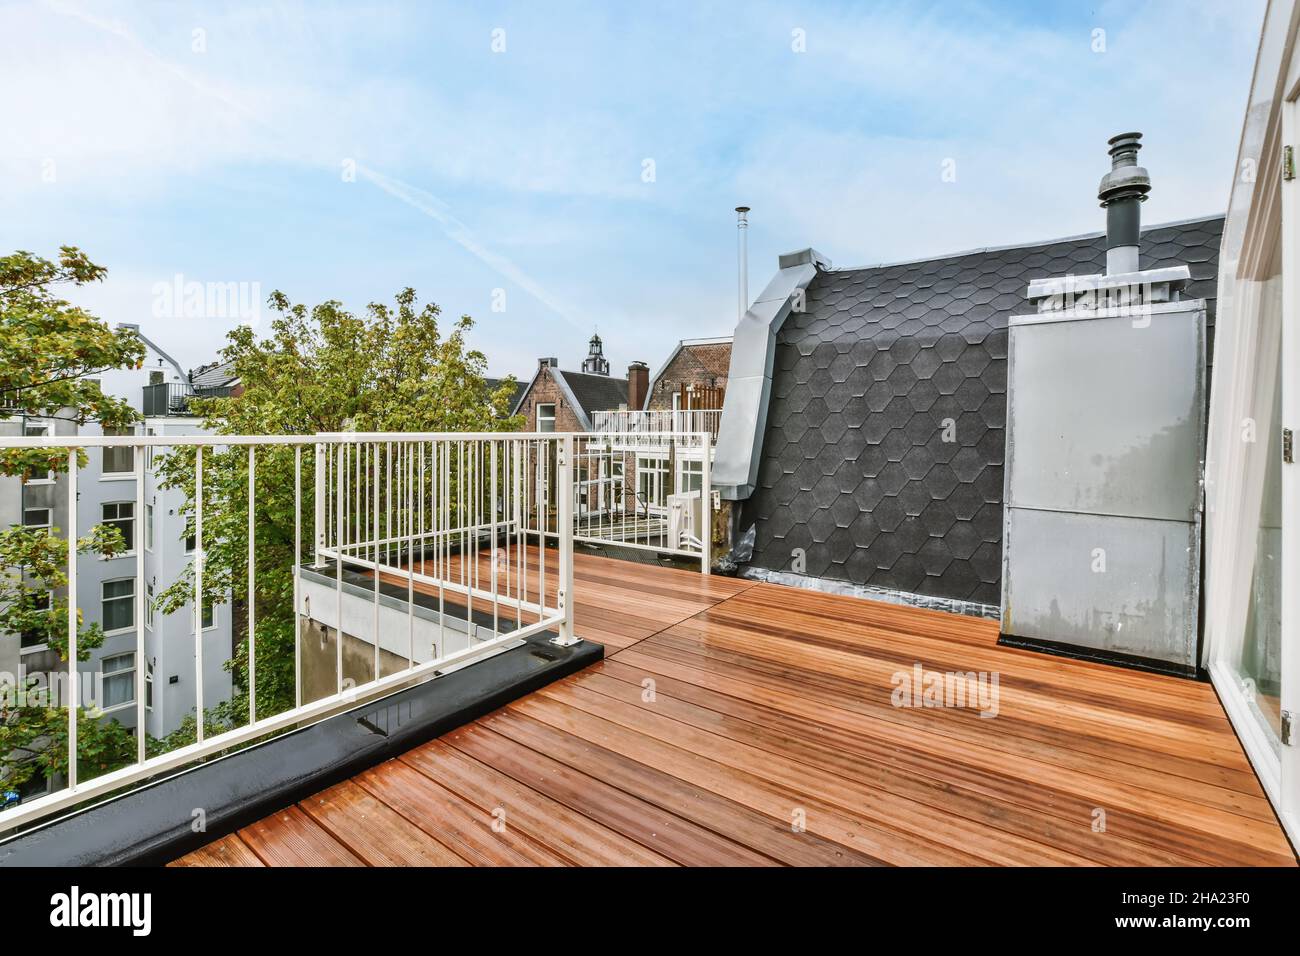 Dachterrasse mit reizvollen Holzböden und weißen Geländern Stockfoto